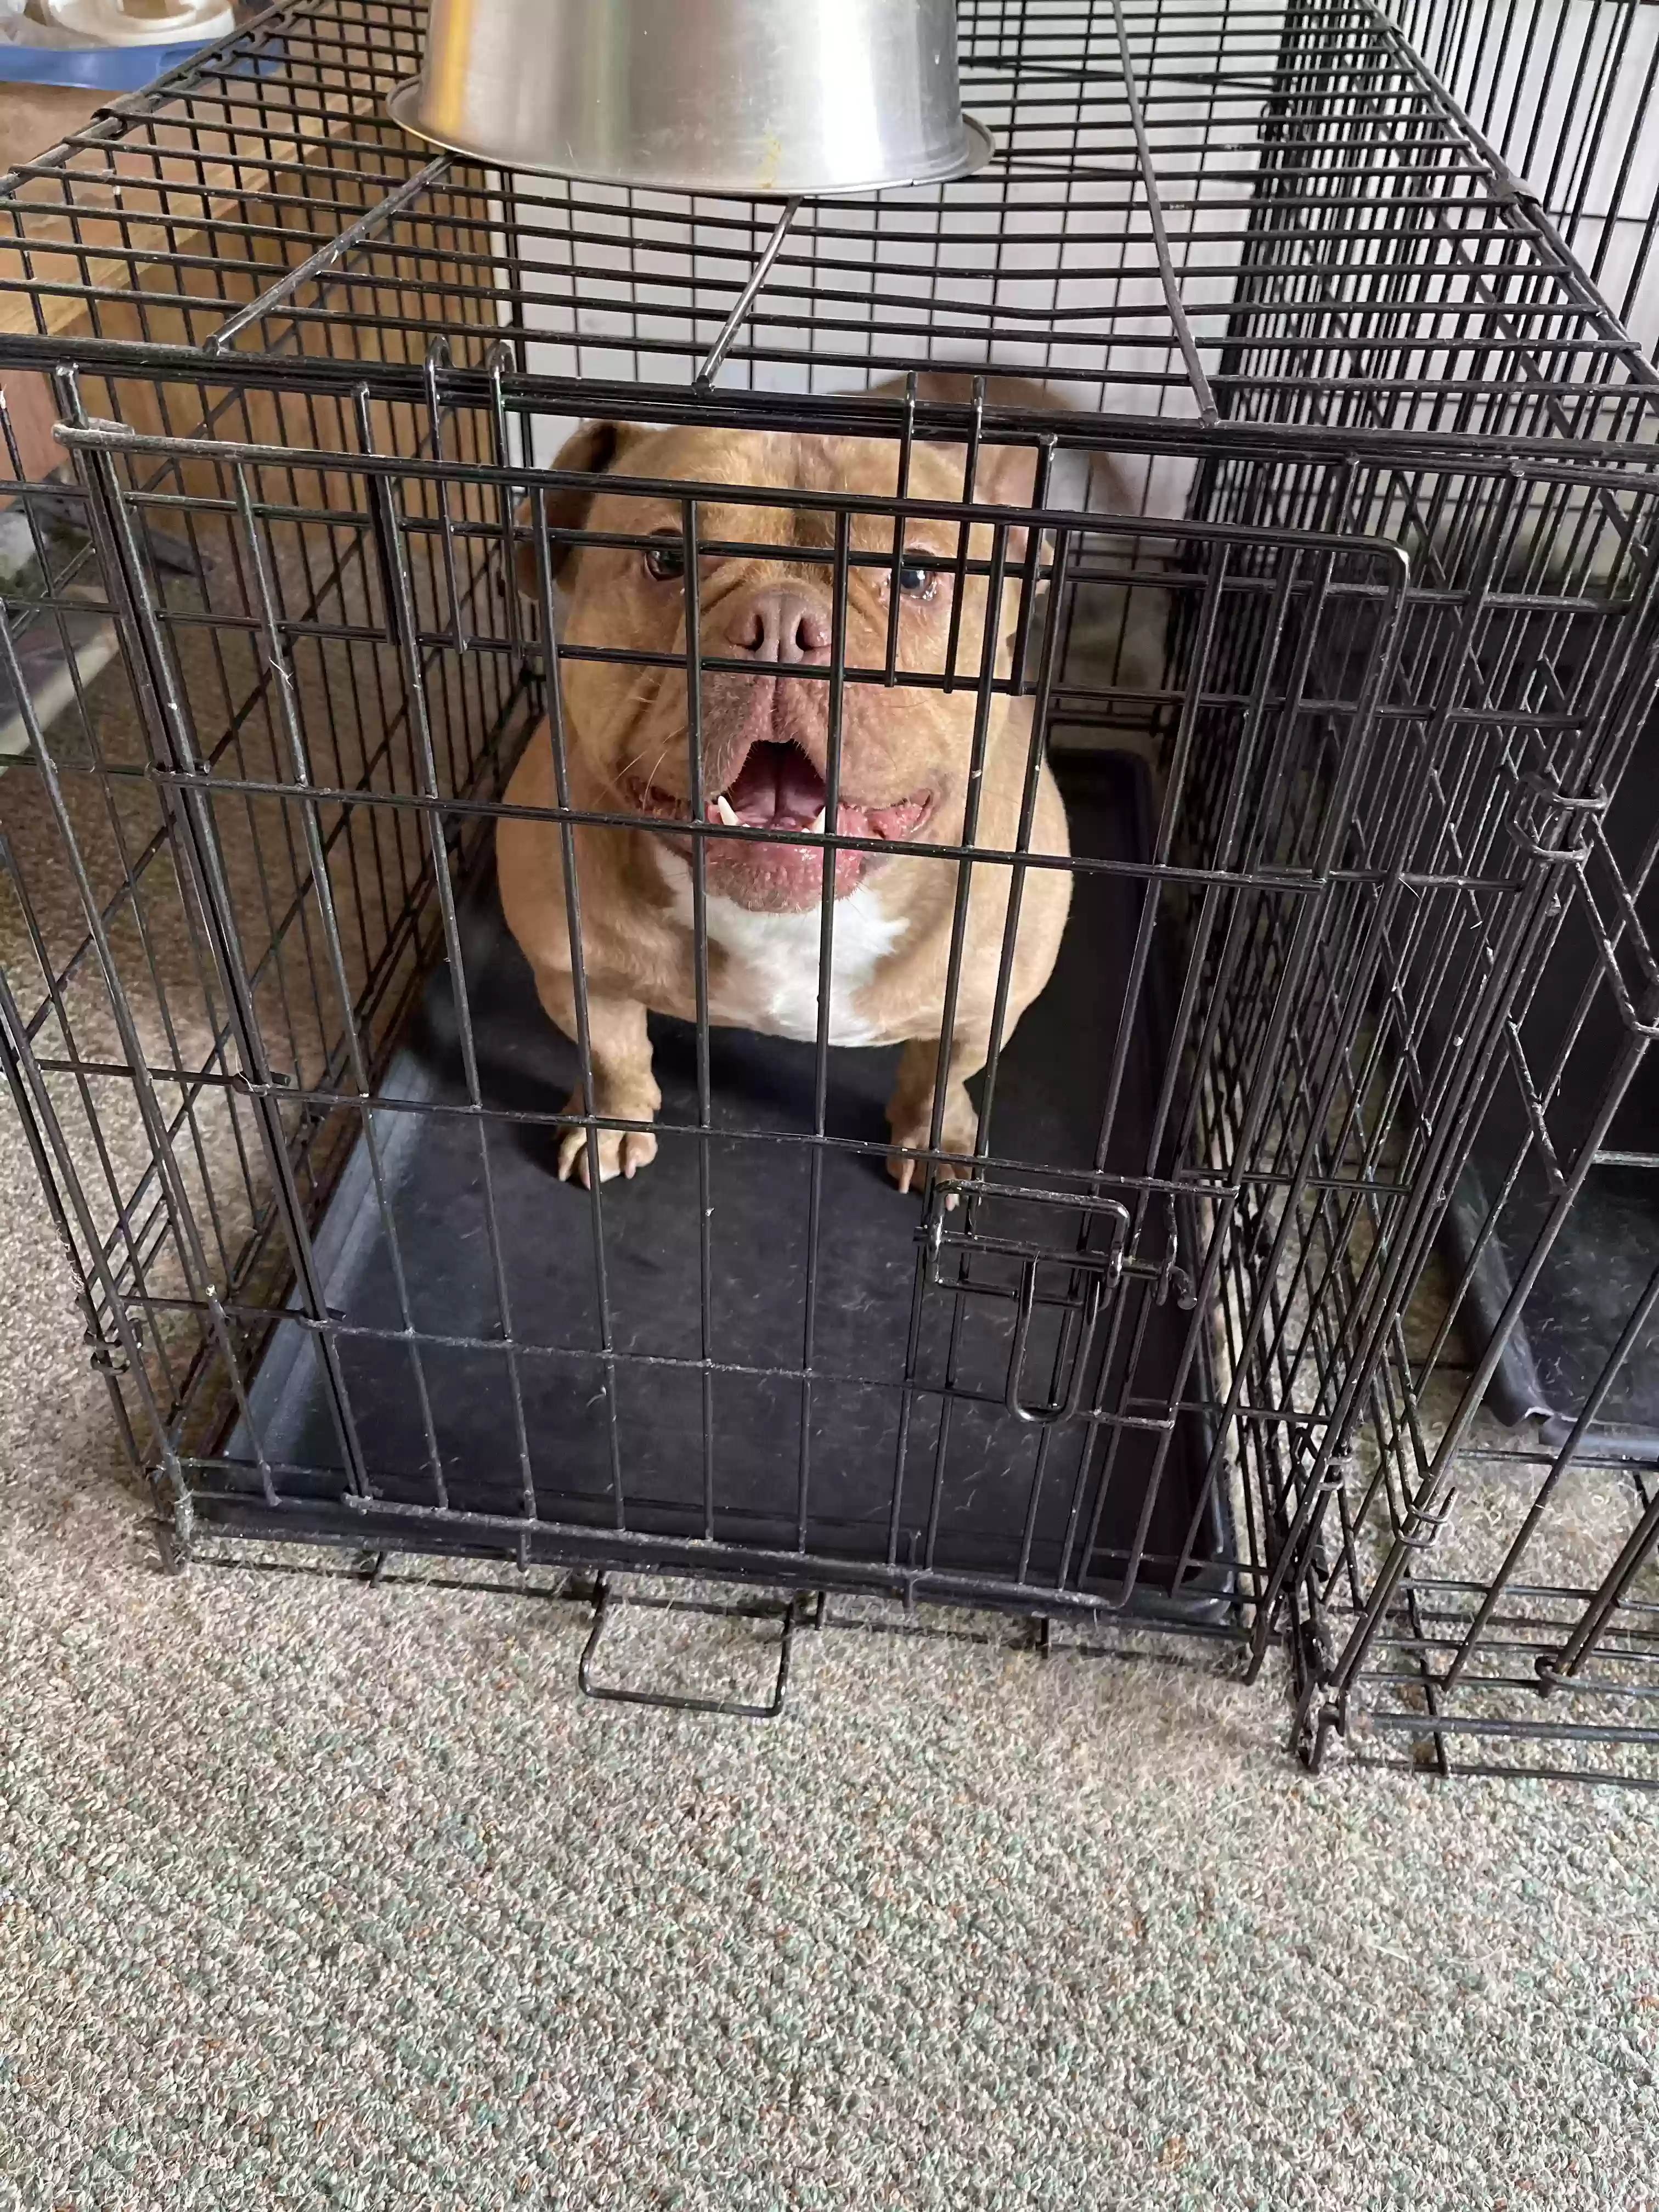 adoptable Dog in Orlando,FL named Ryder